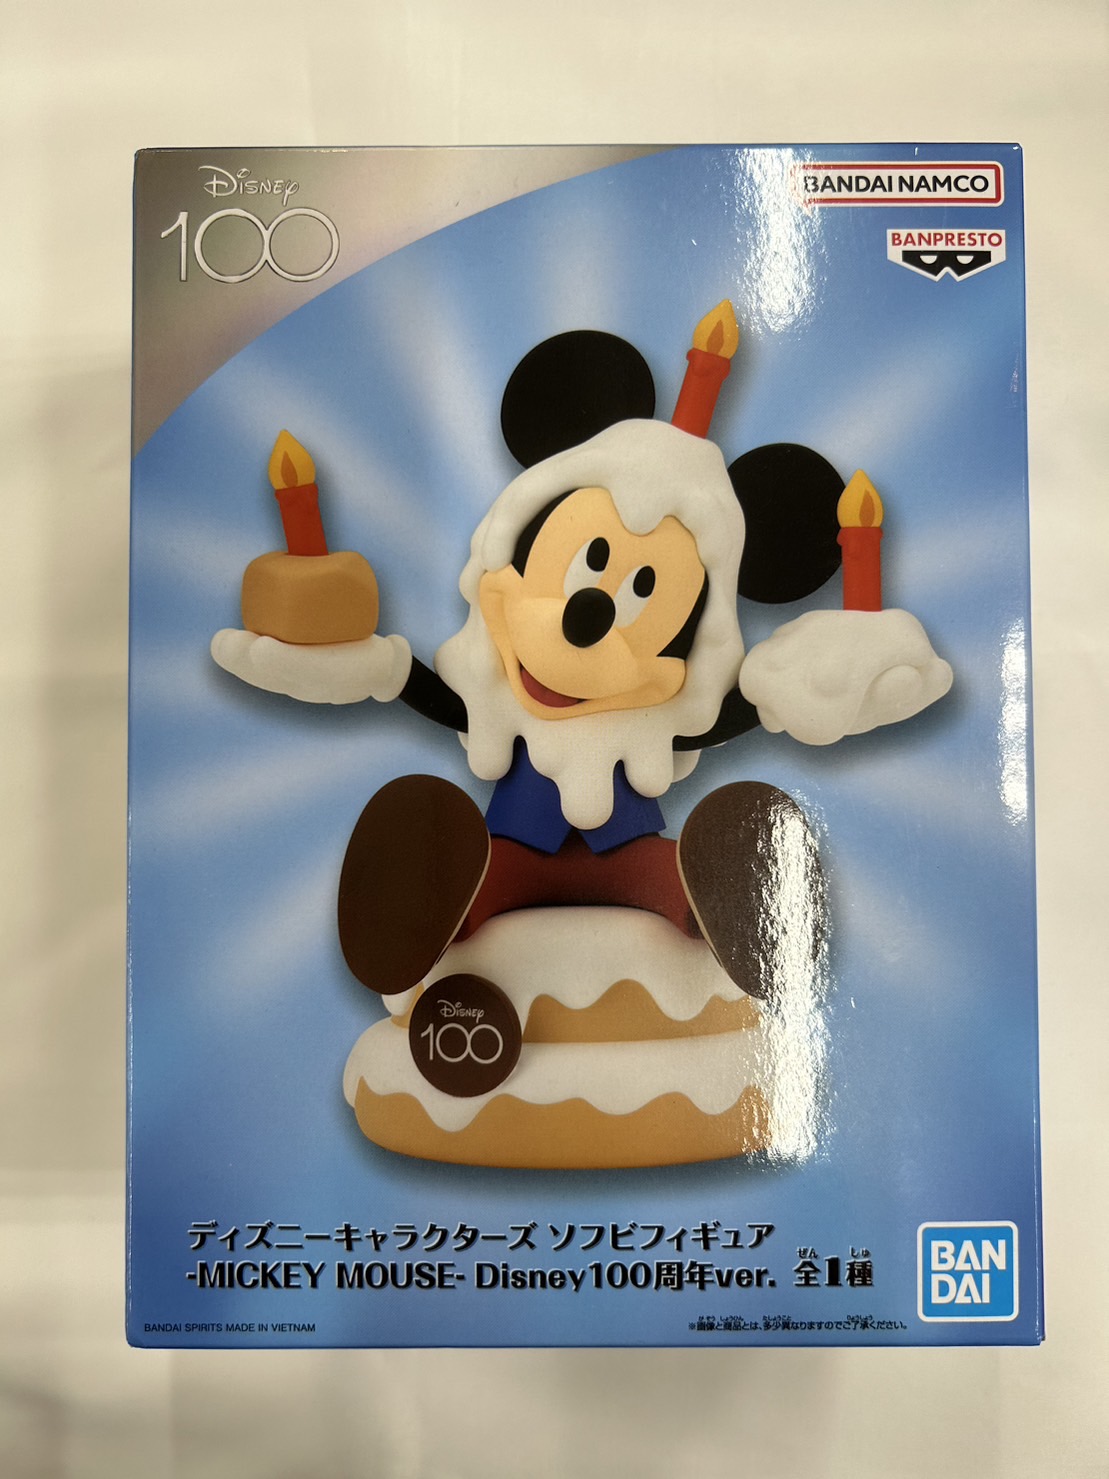 ディズニーキャラクターズ ソフビフィギュア -MICKEY MOUSE- Disney100周年ver. 2665818